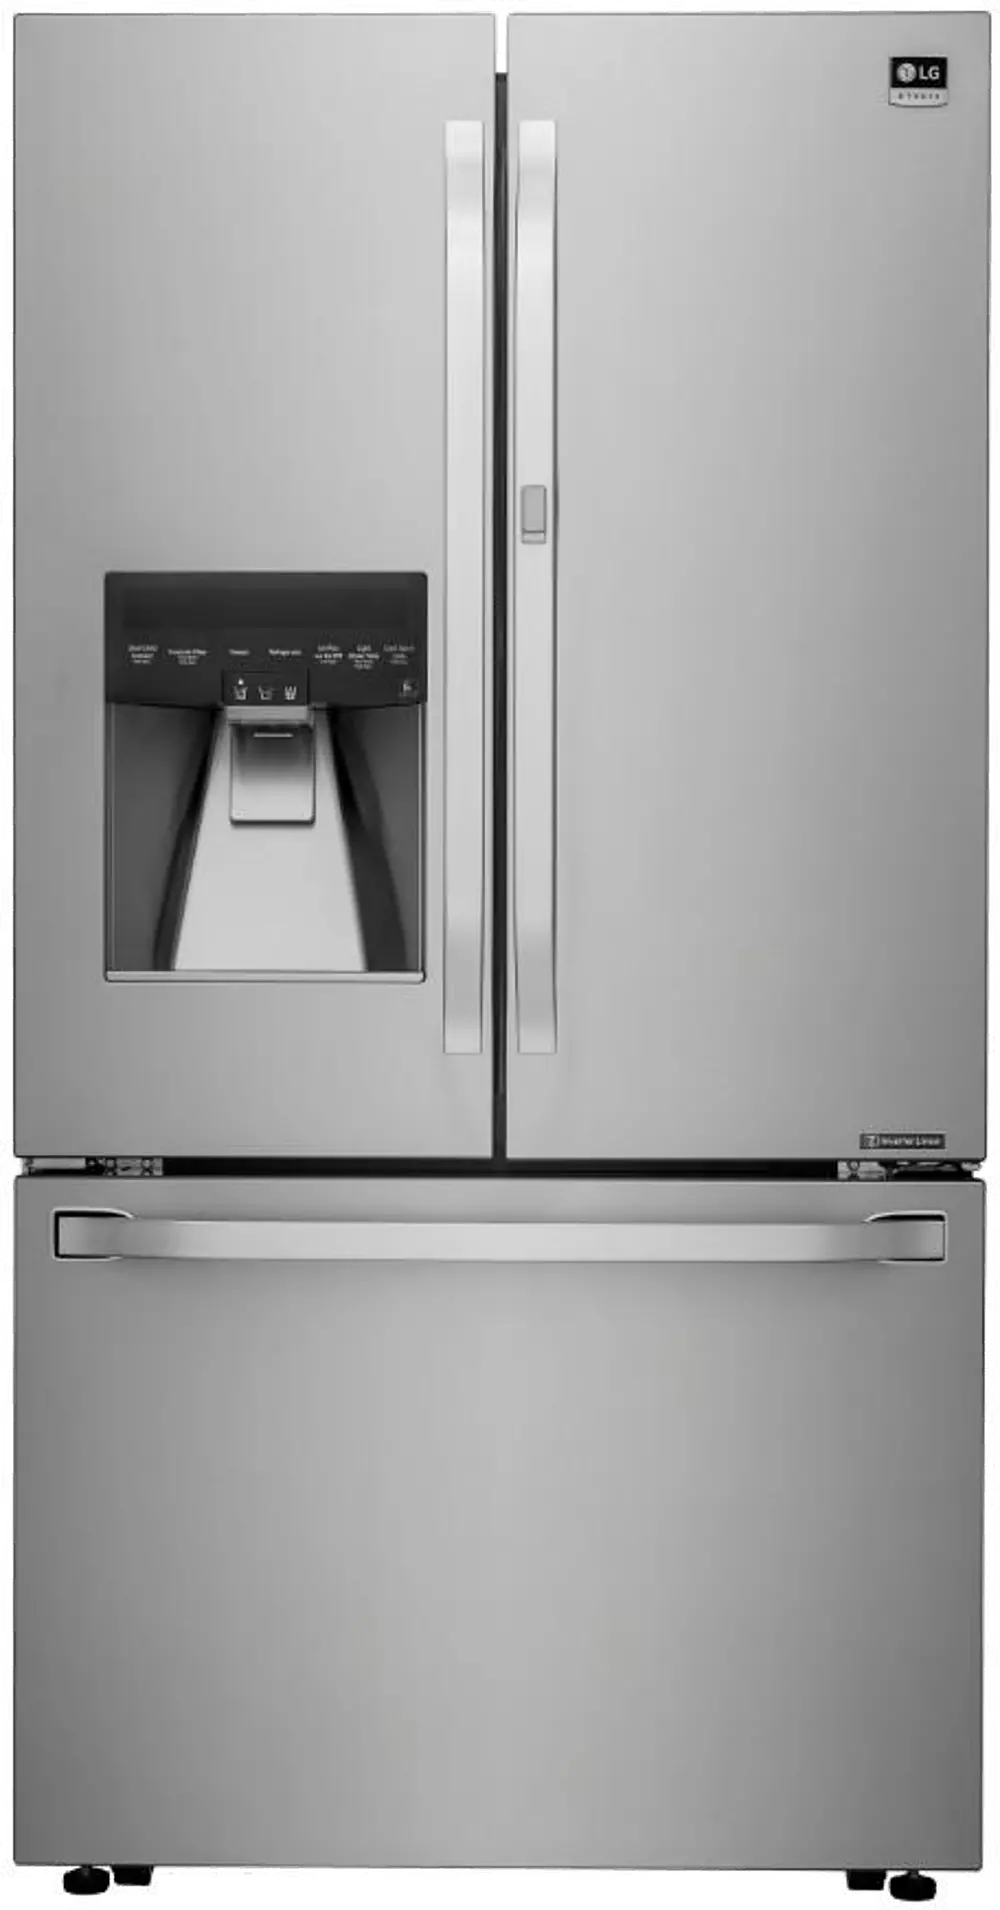 LSFXC2476S LG STUDIO French Door Counter Depth Smart Refrigerator with Door-in-Door - 23.5 cu. ft., 36 inch Stainless Steel-1